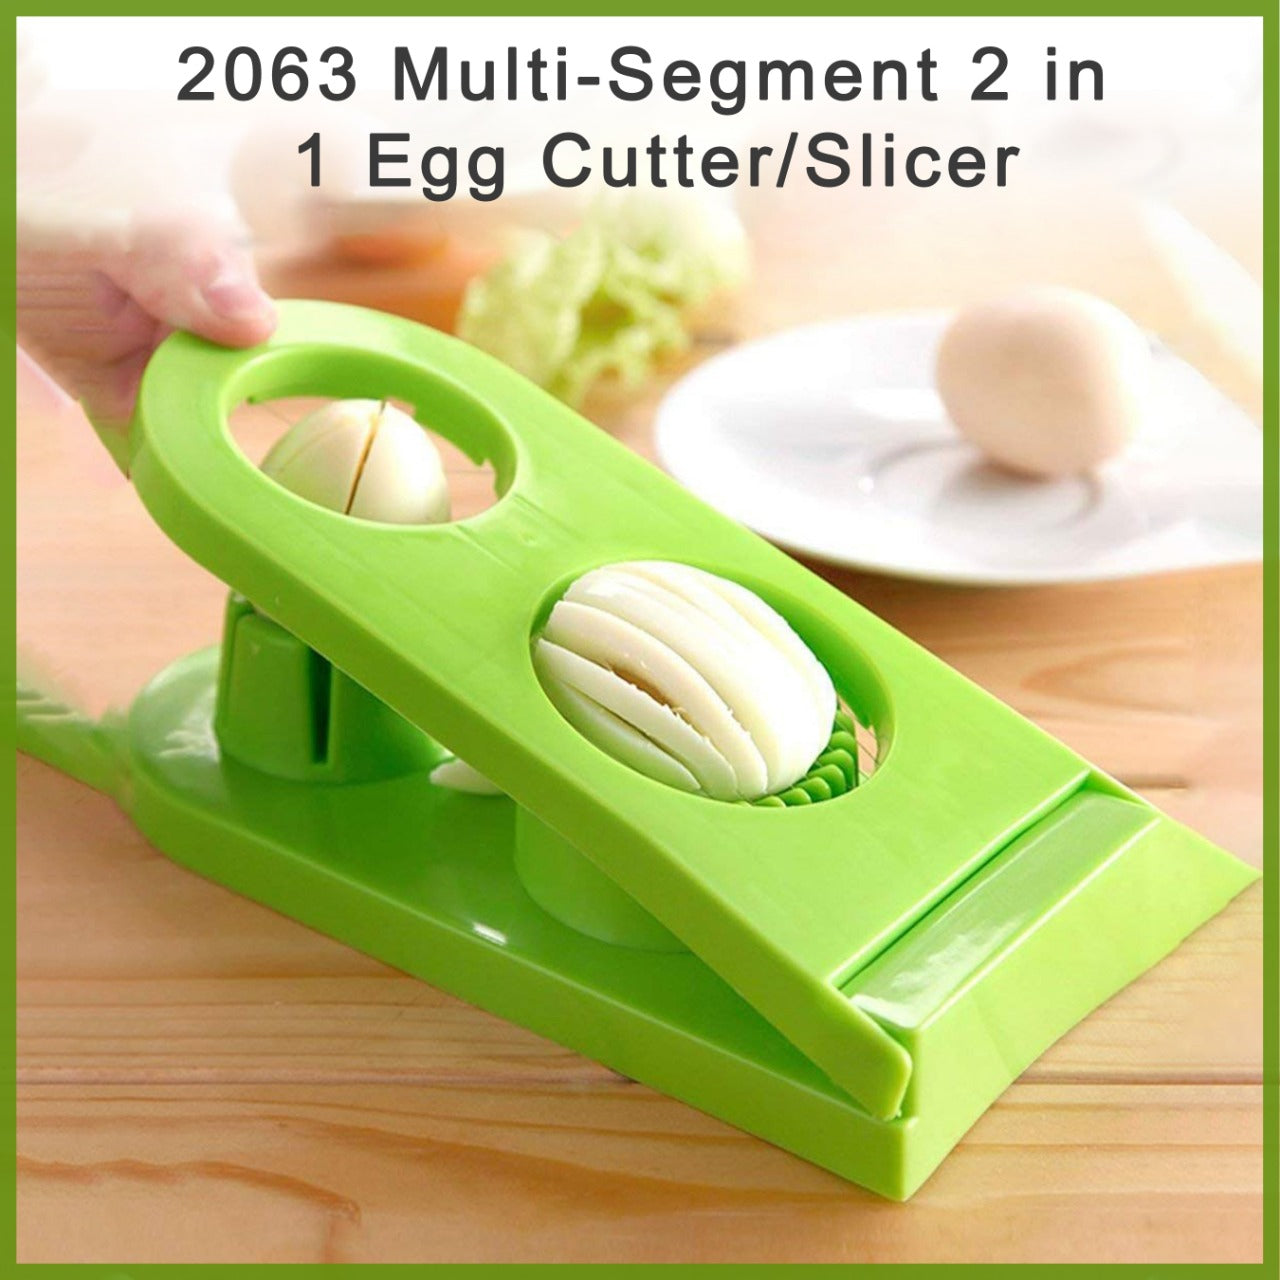 2063 Multi-Segment 2 in 1 Egg Cutter/Slicer JK Trends